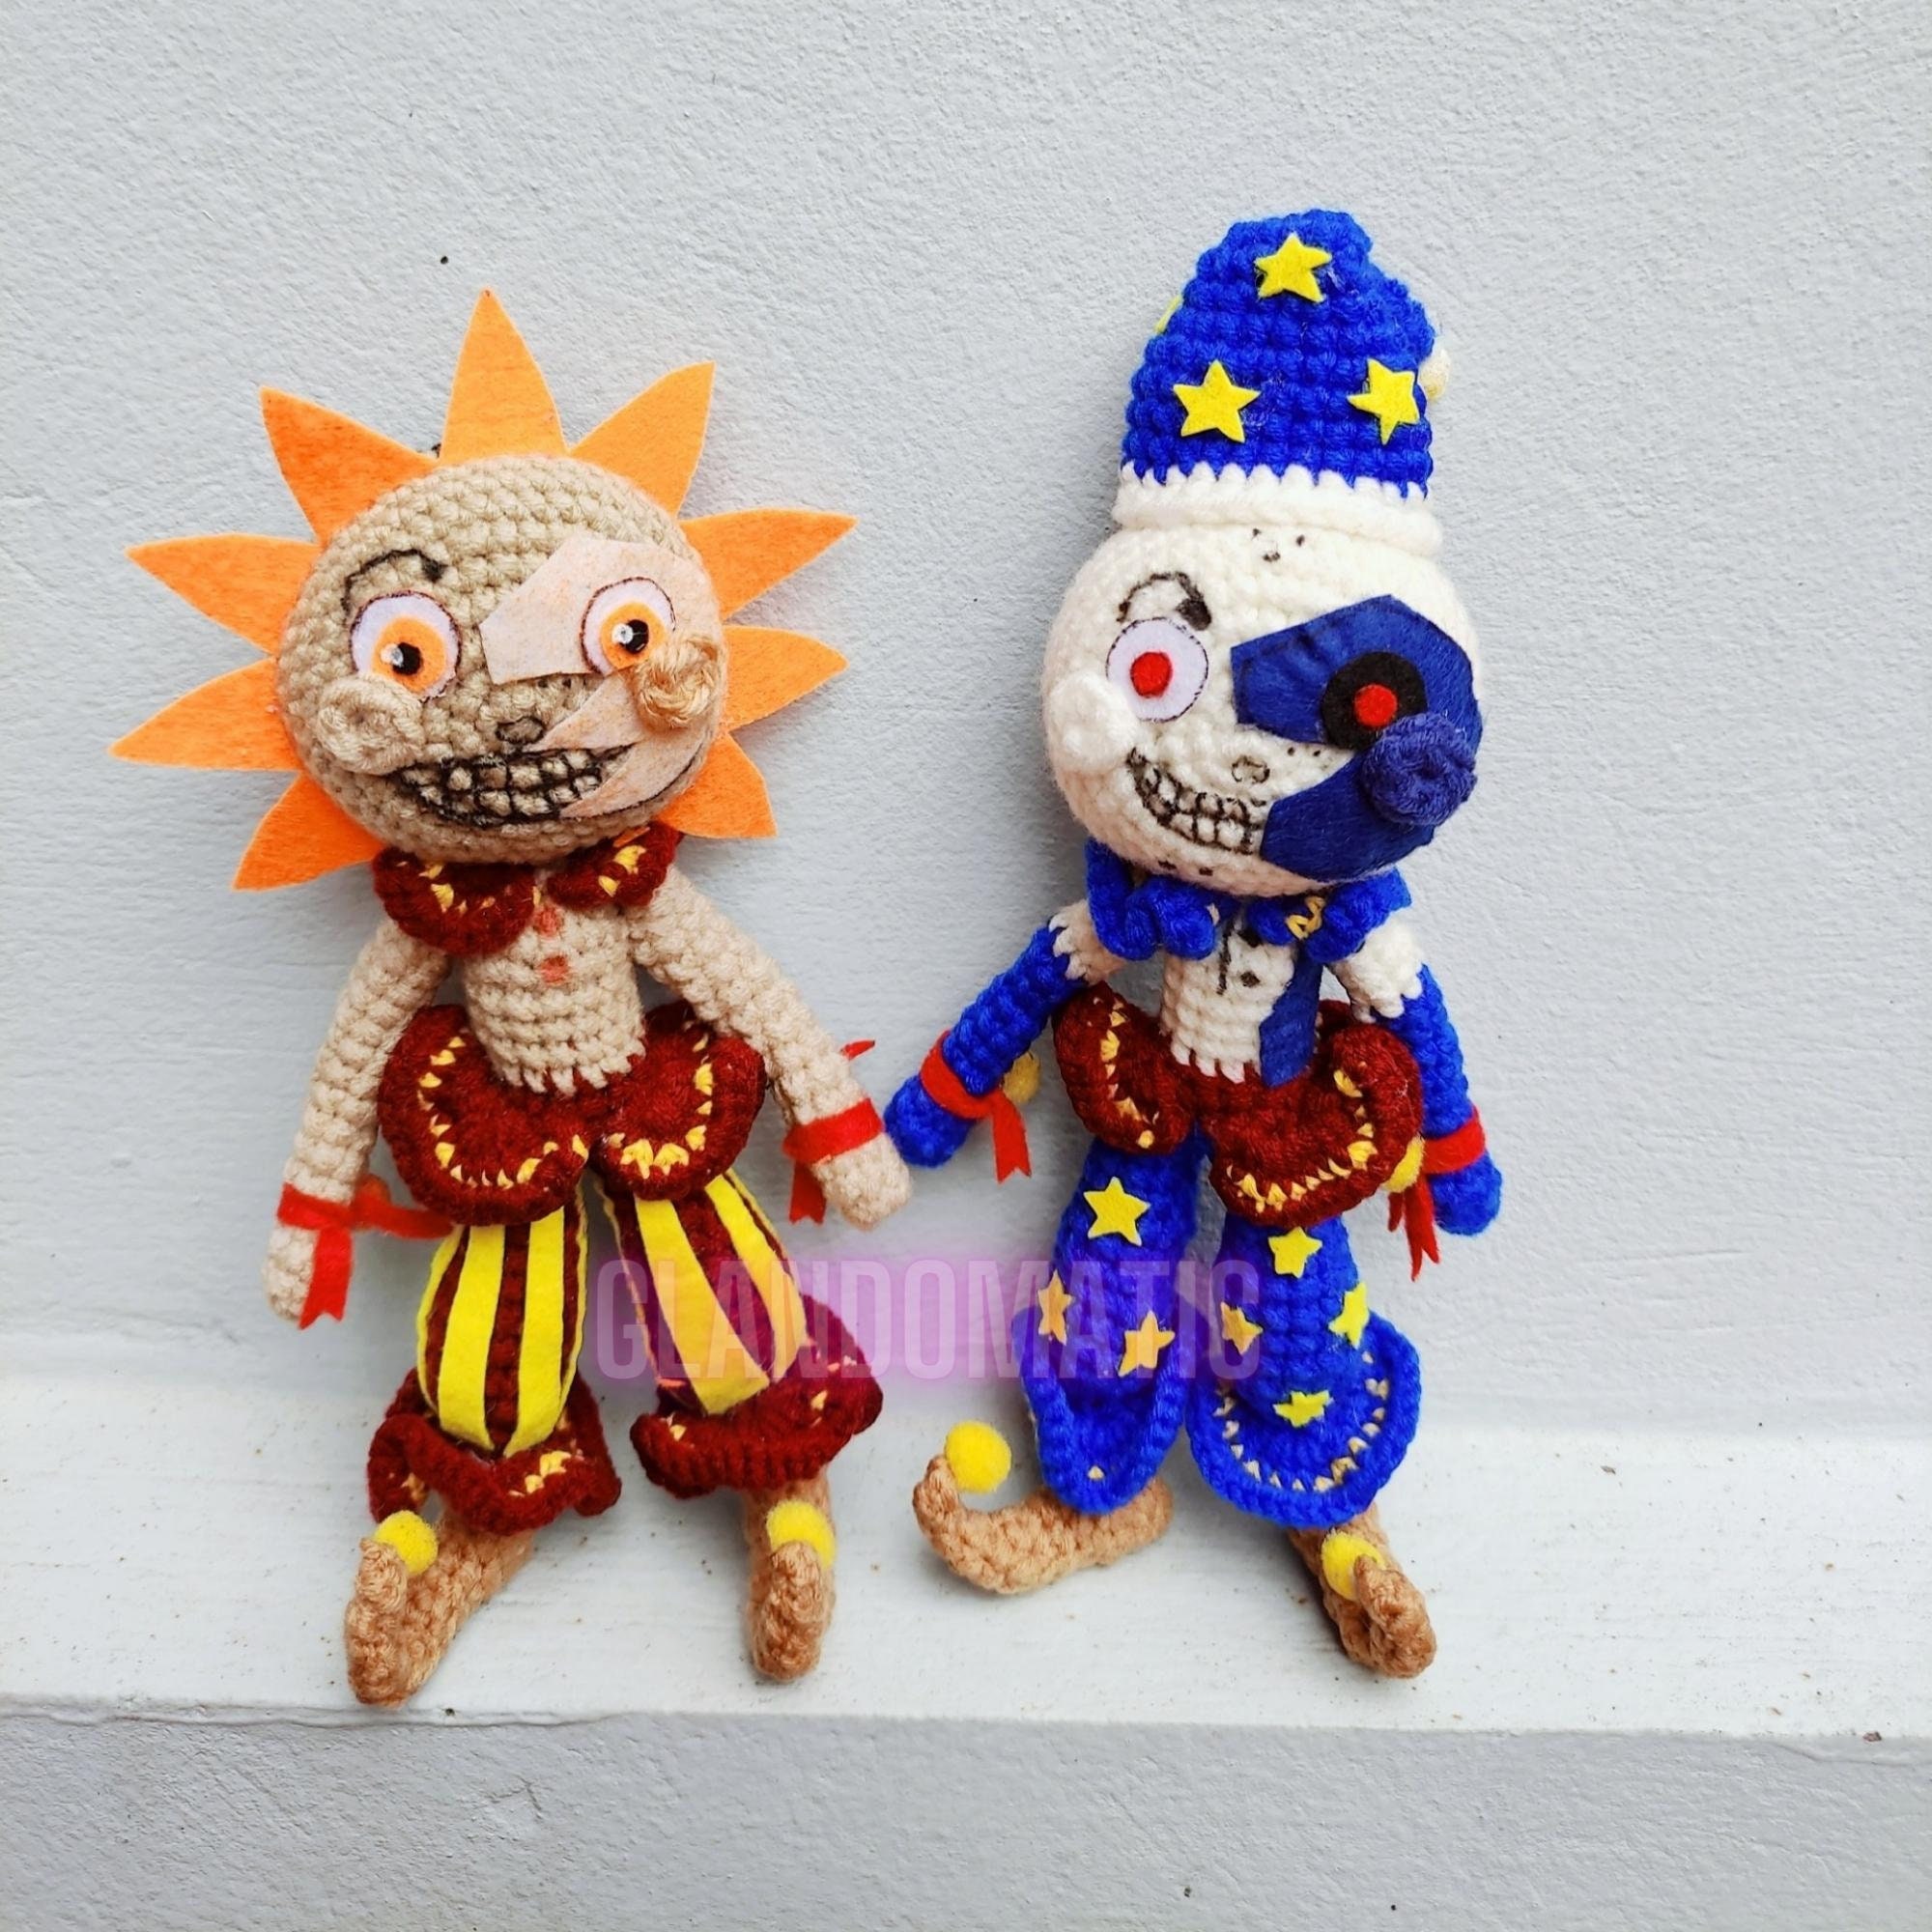 Sundrop Fnaf Plush, Sun Clown Doll Game Plush Toys 10 Inch Sundrop Fnaf  Plush